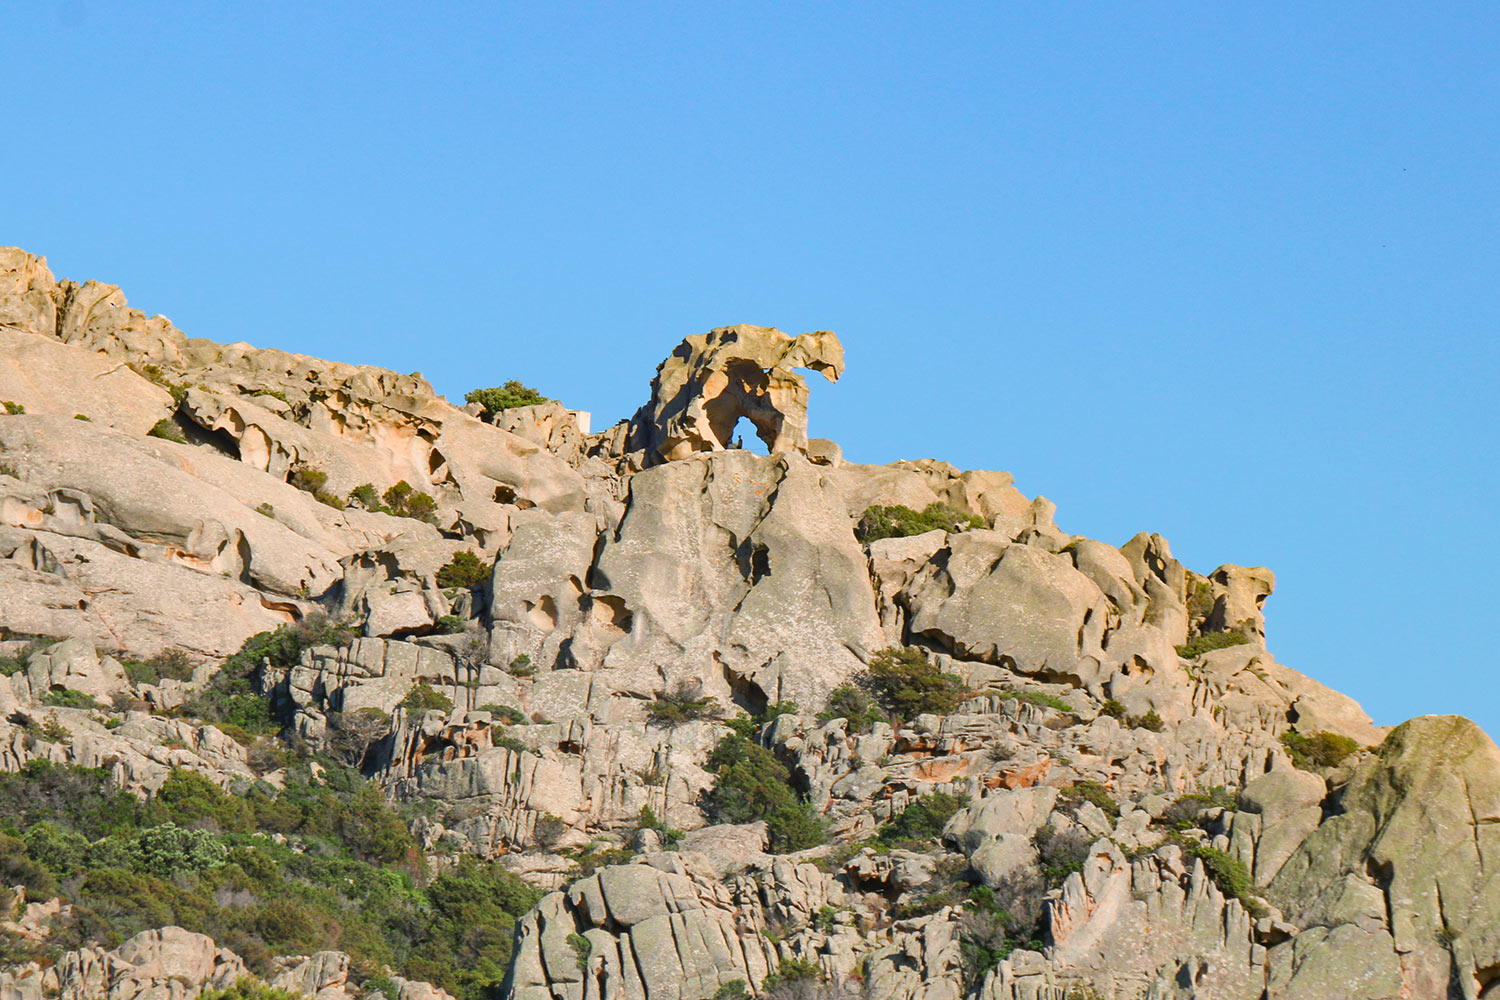 Cap de l'Ours, Sardaigne, Italie / Capo d'Orso, Sardinia, Italy